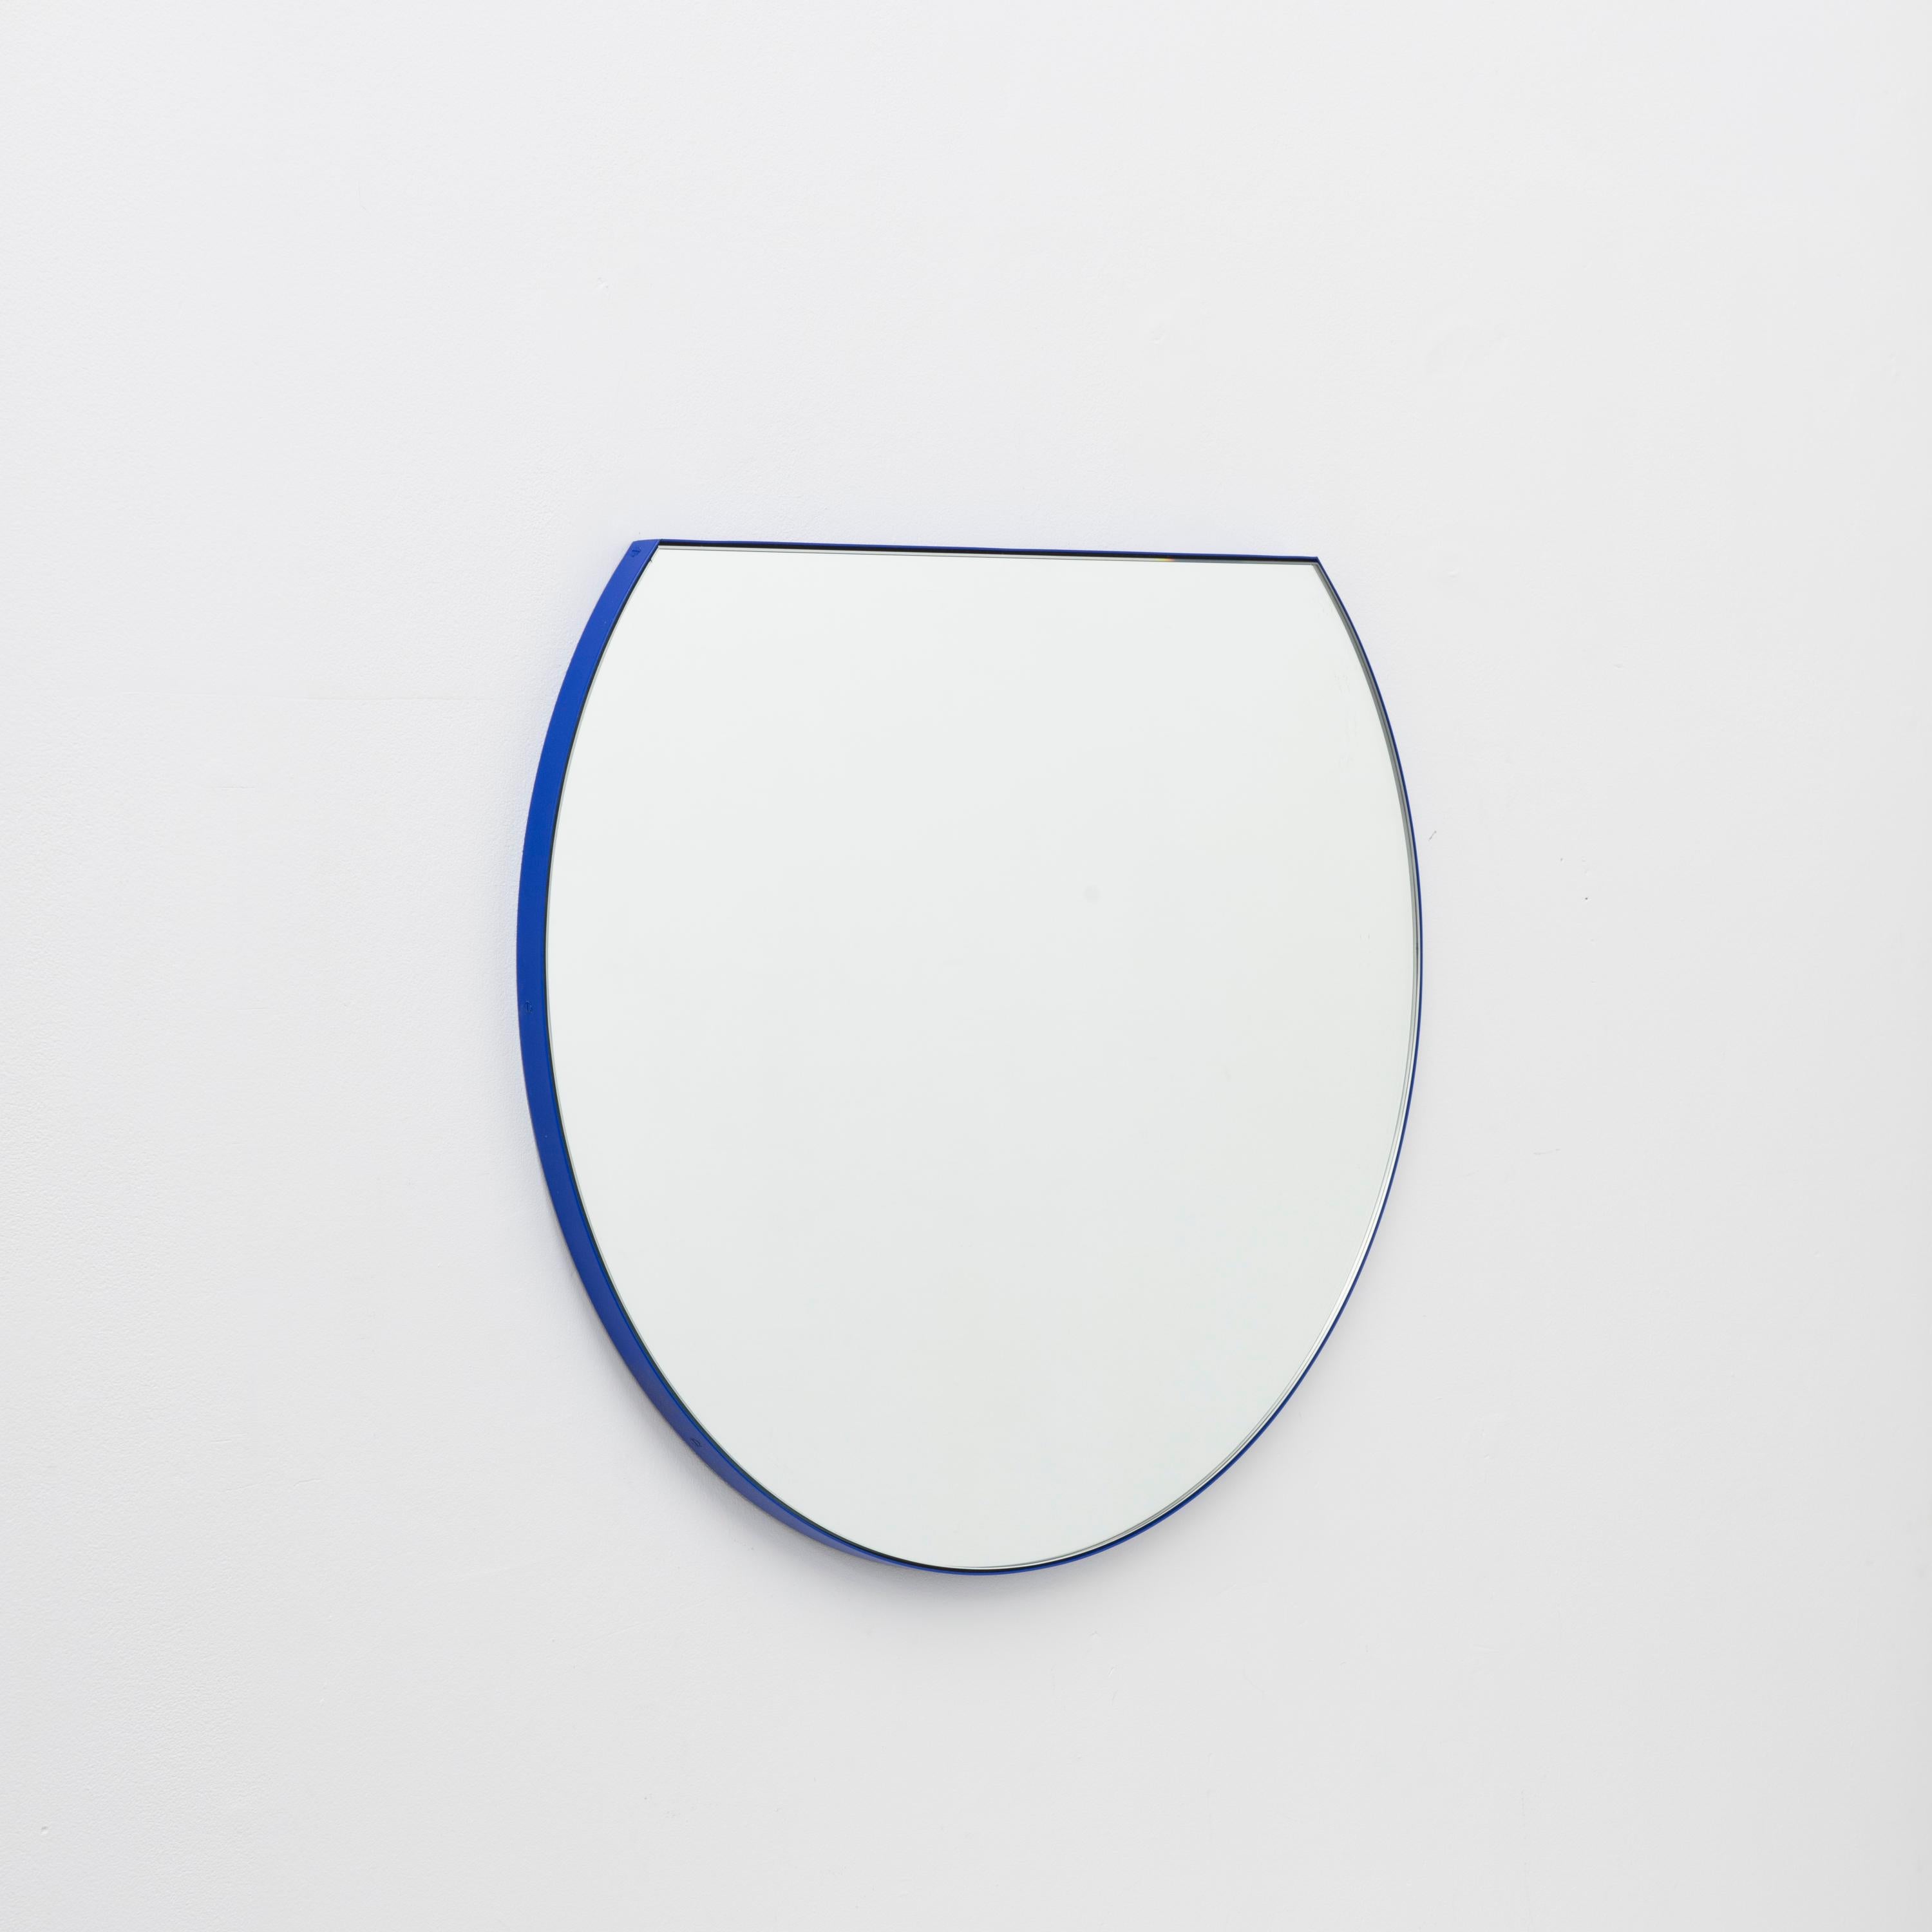 Neuer moderner runder Spiegel mit einem lebendigen pulverbeschichteten blauen Aluminiumrahmen. Entworfen und handgefertigt in London, UK.

Je nach Größe des Spiegels mit einem Messinghaken oder einer Aluminium-Z-Stange ausgestattet. Auf Wunsch auch